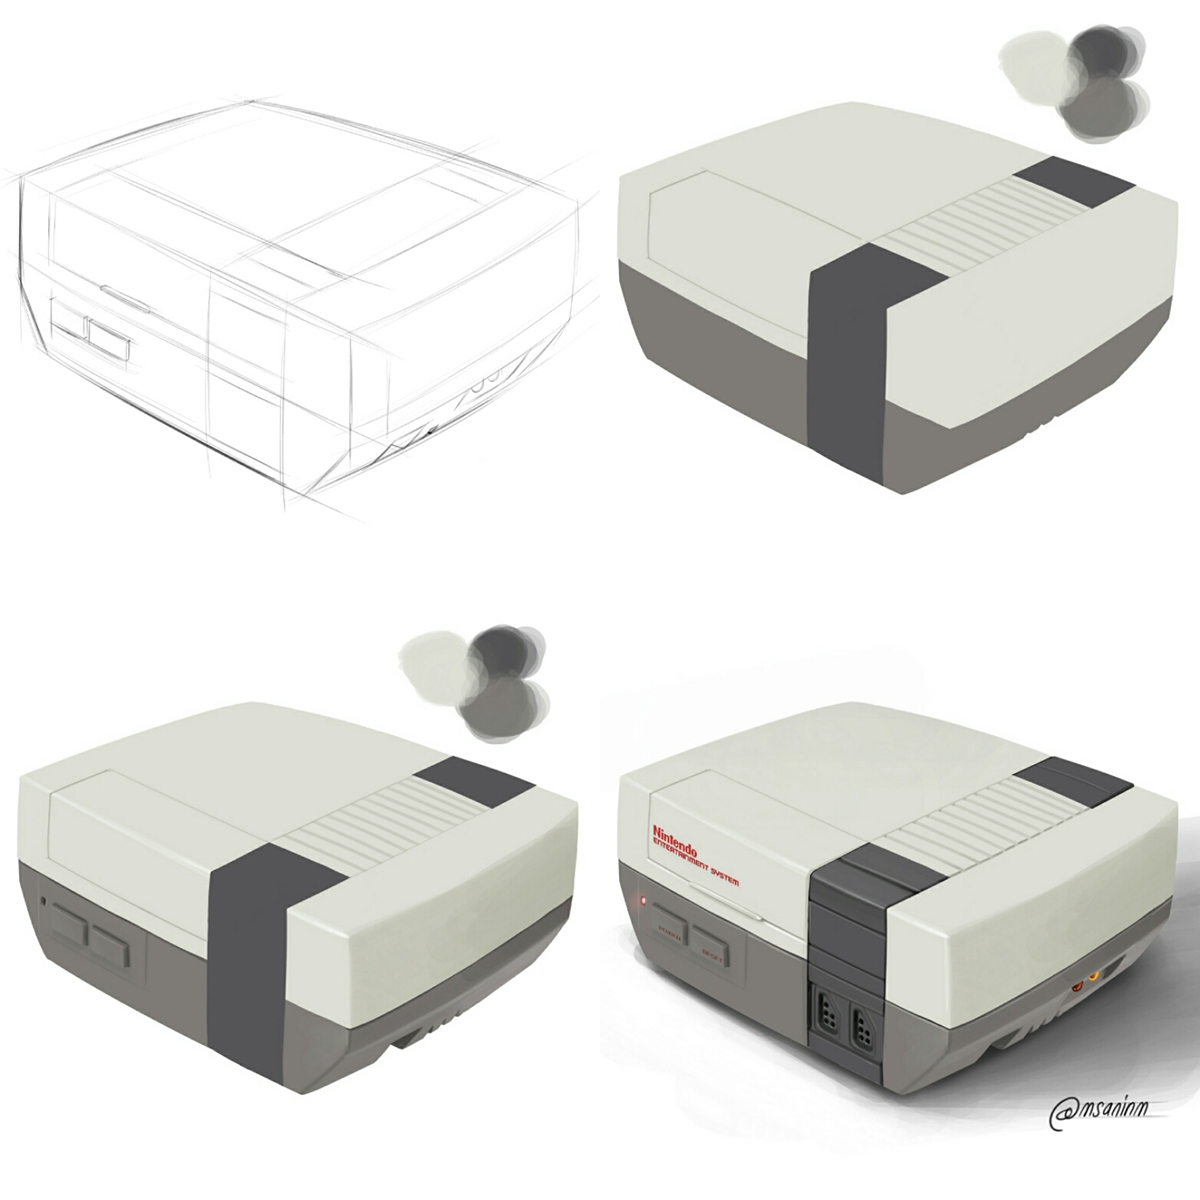 sketch digital painting sketching industrial design  ILLUSTRATION  NES Nintendo product design  design